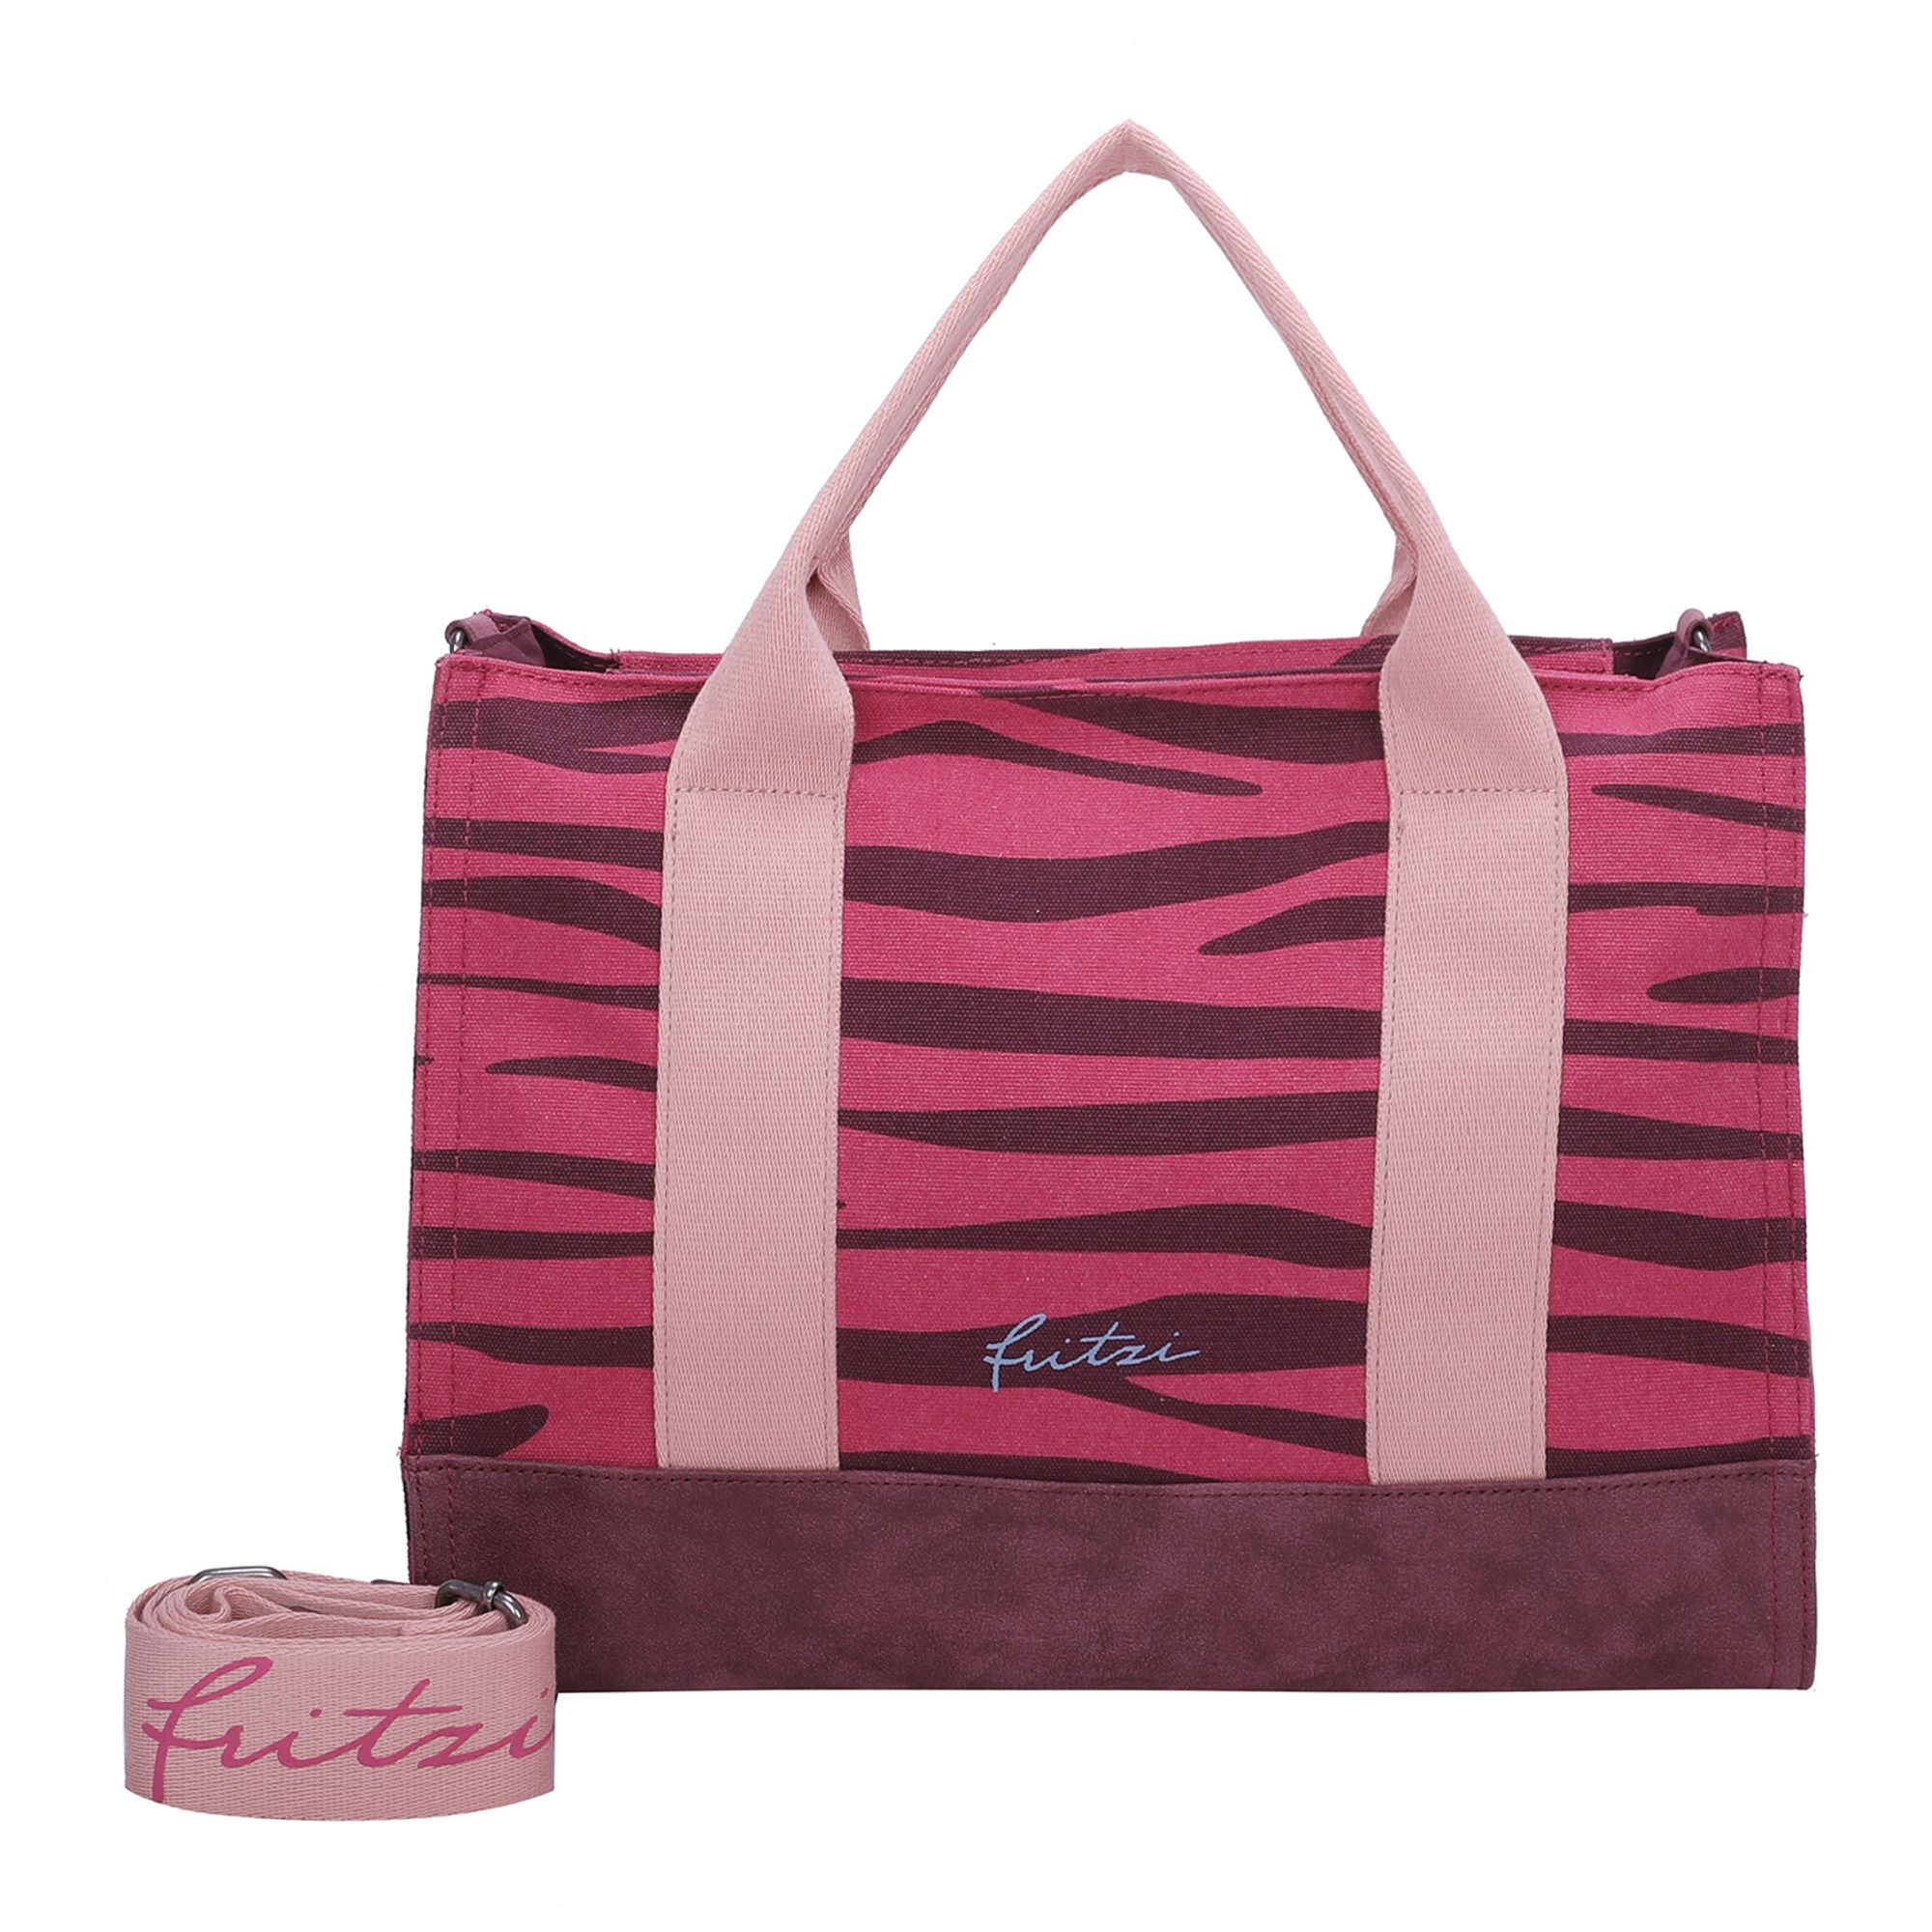 Сумка Fritzi aus Preußen Canvas Handtasche 40 cm, цвет zebra pink